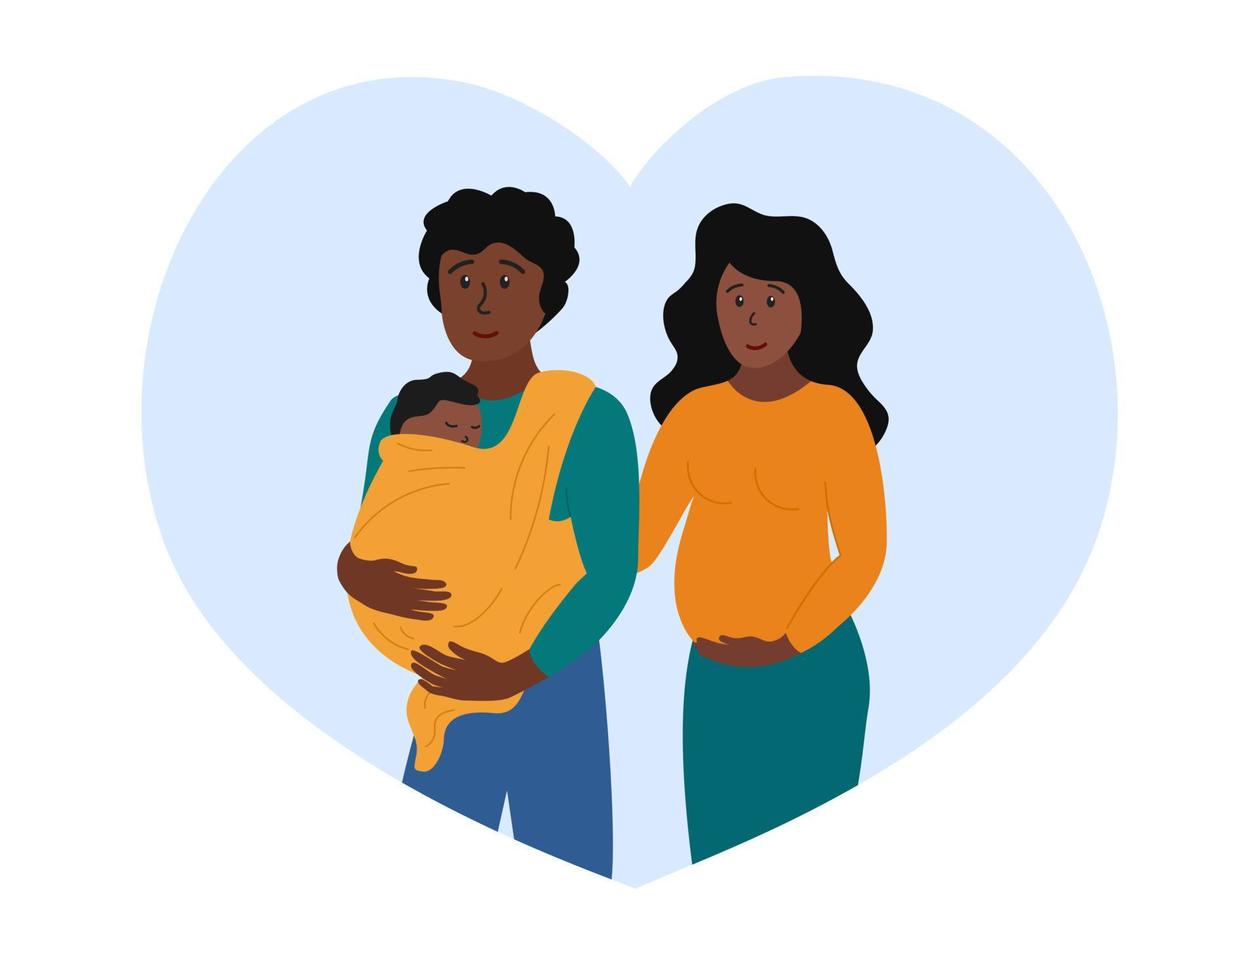 glückliche Familie. Schwangere Frau und Mann mit kleinem Baby im Tragetuch. Fröhliches afroamerikanisches Paar, Vater und Mutter, die ein Neugeborenes erwarten. flache Vektorgrafik vektor